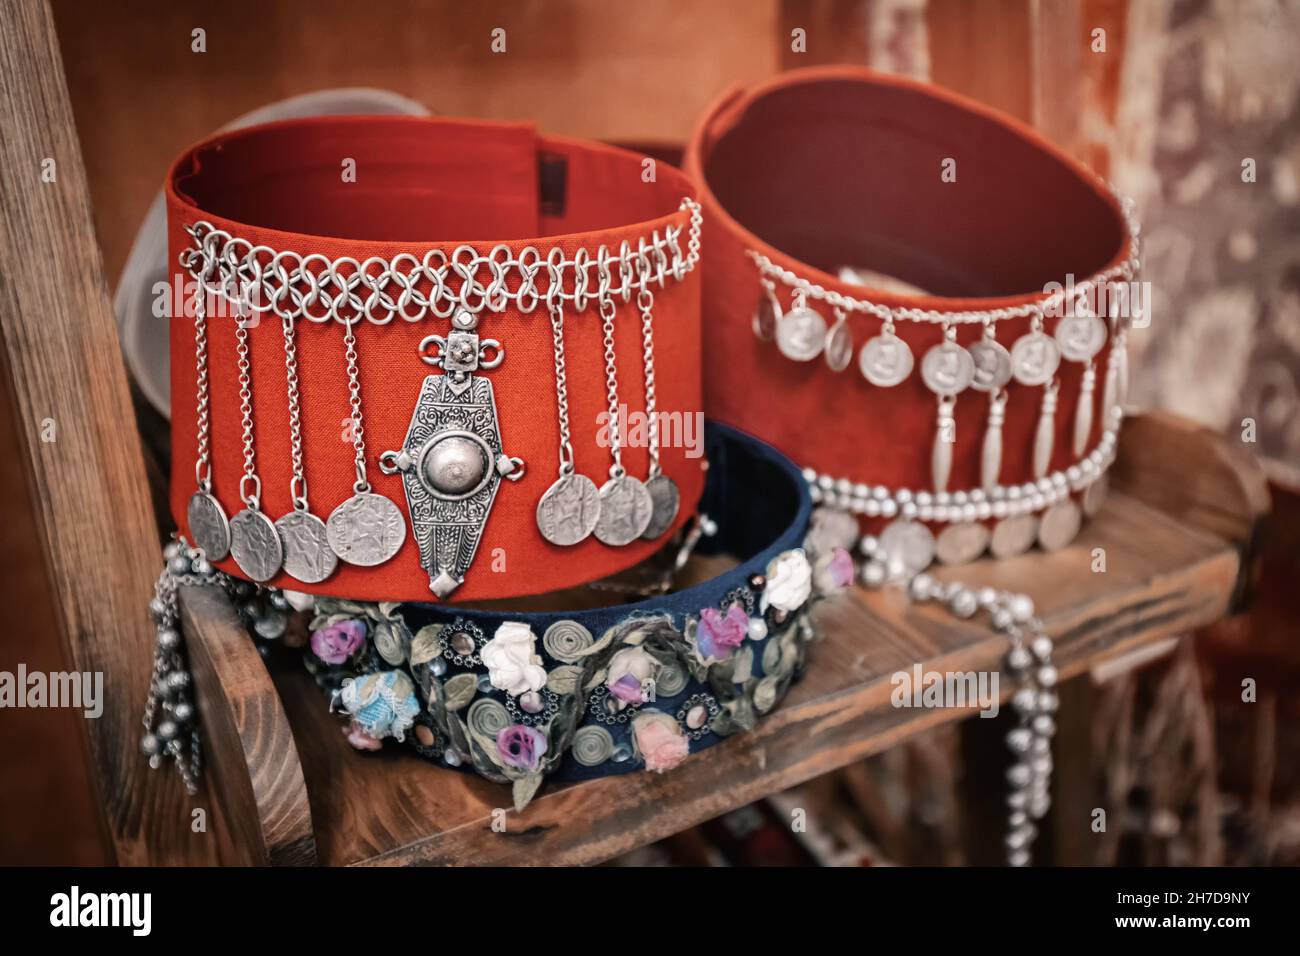 Adresse arménienne traditionnelle avec tissu rouge et pièces de monnaie vintage comme décoration.Folk et ethnies dans des vêtements à la mode Banque D'Images